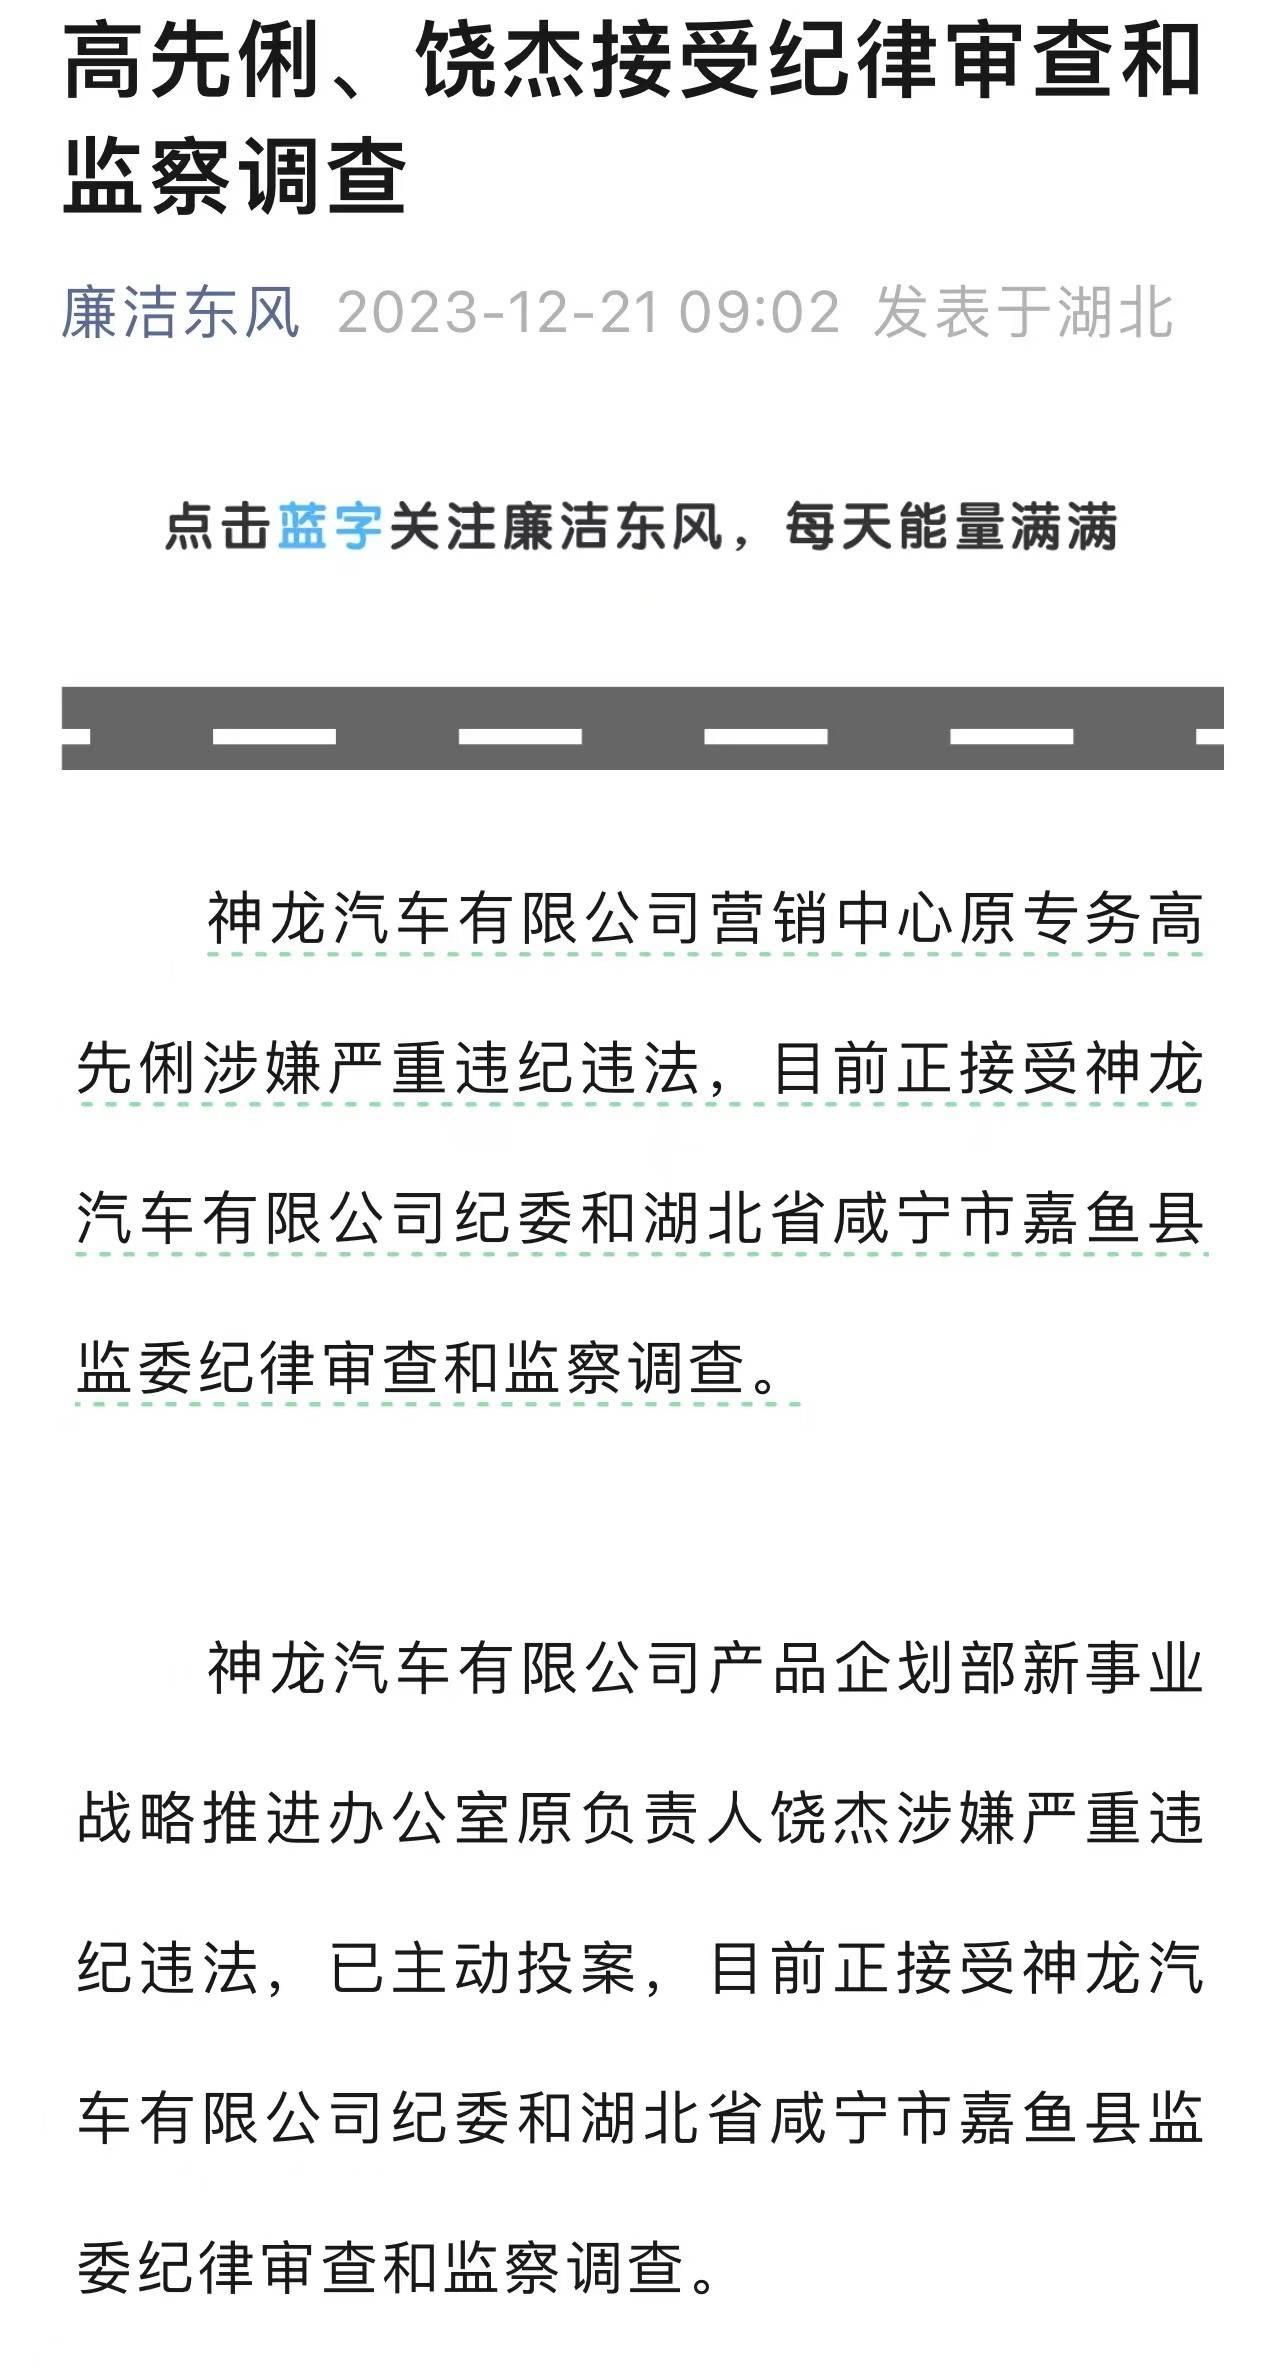 贵州大学原党委副书记任钢建接受纪律审查和监察调查